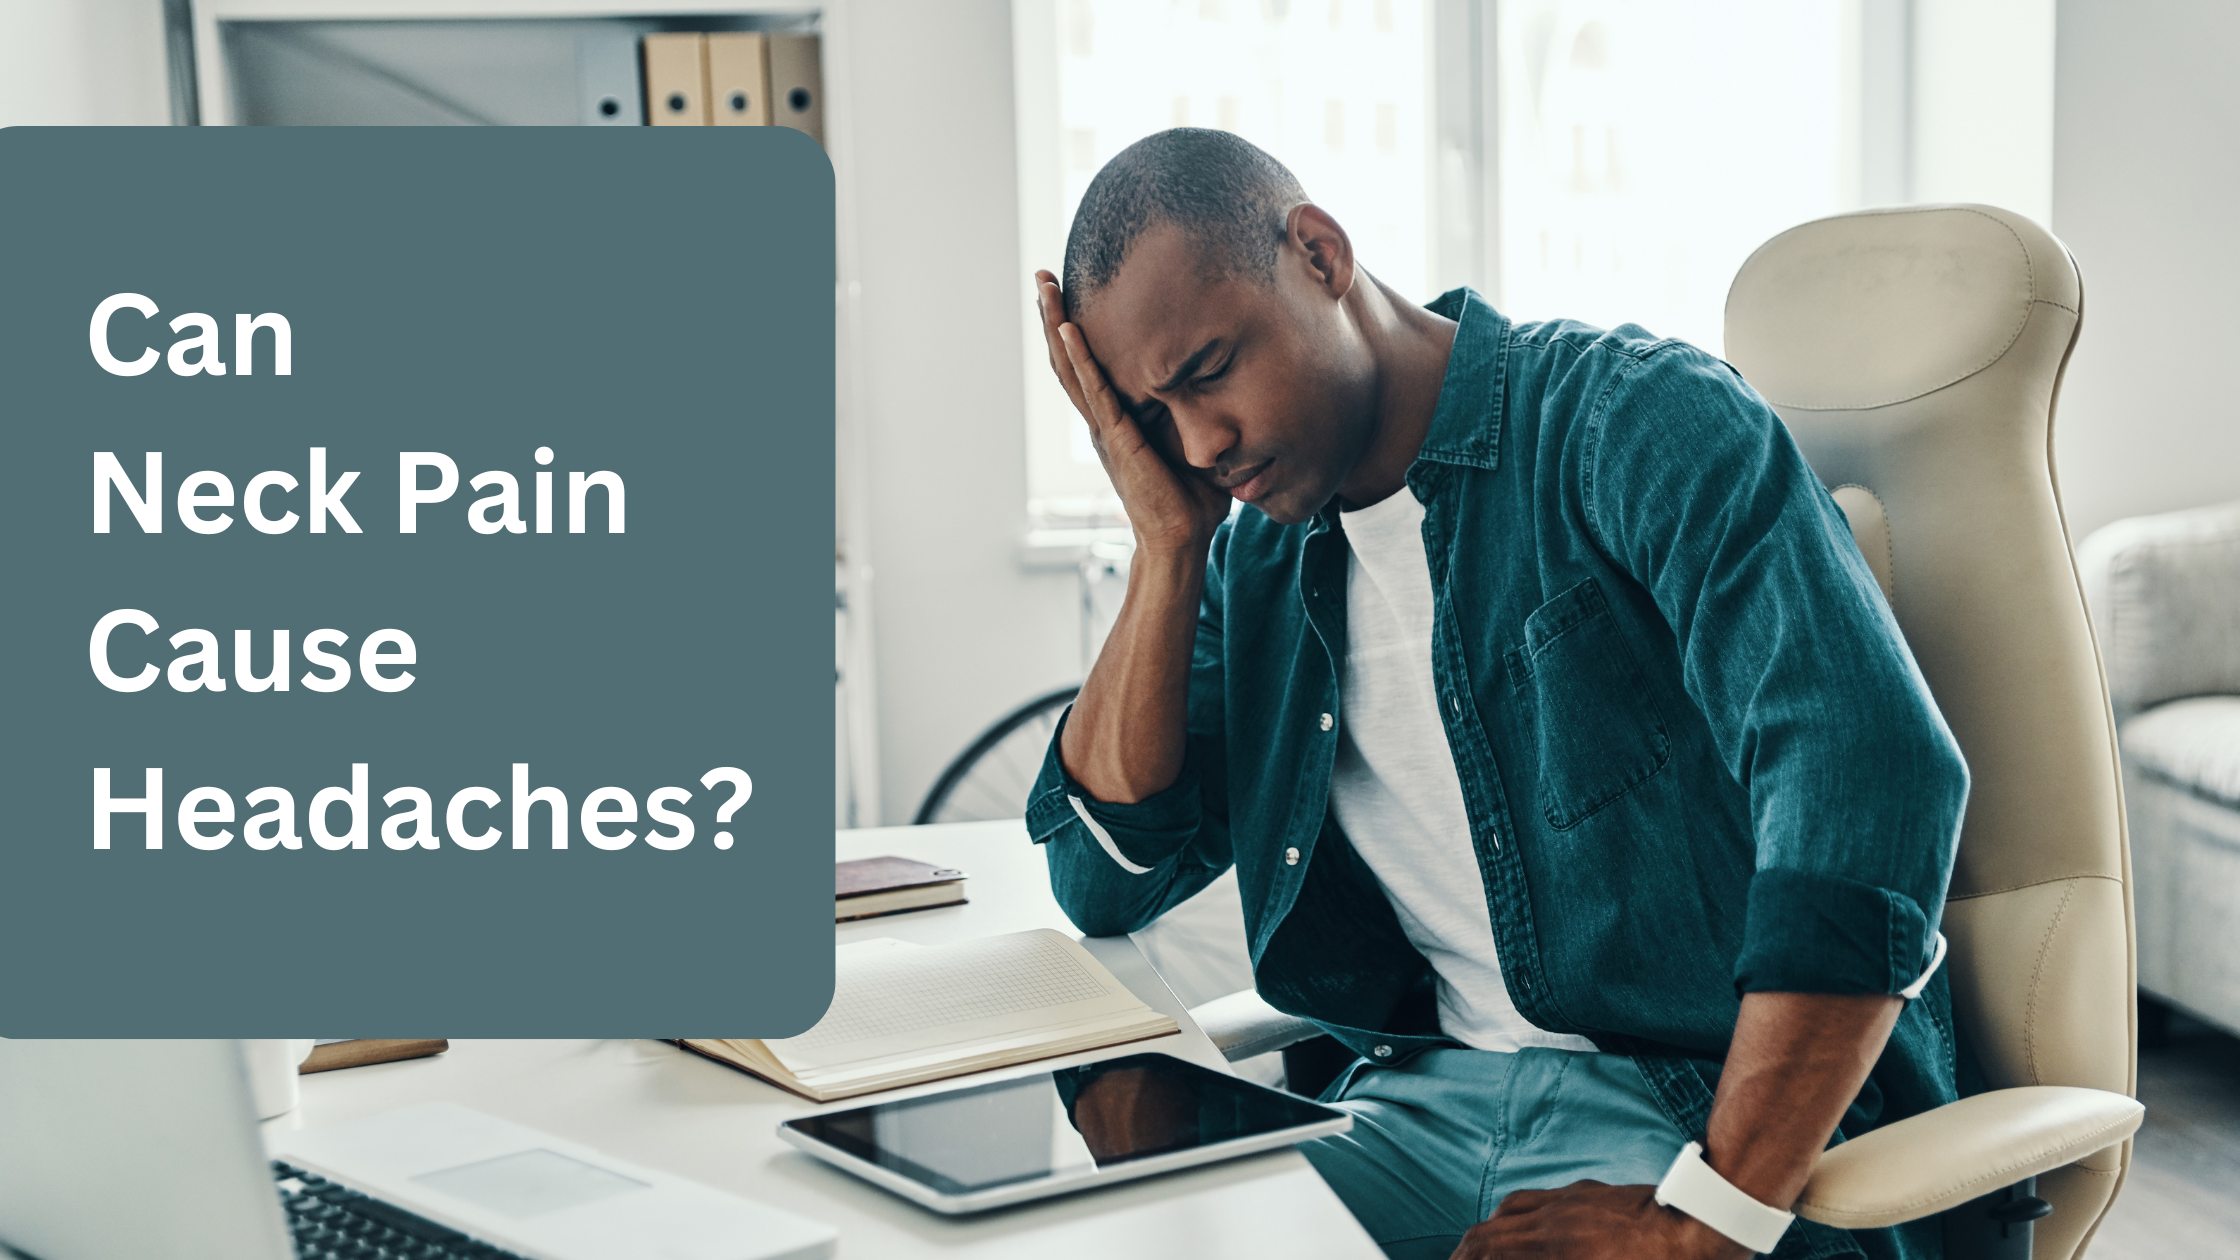 Can neck pain cause headaches?